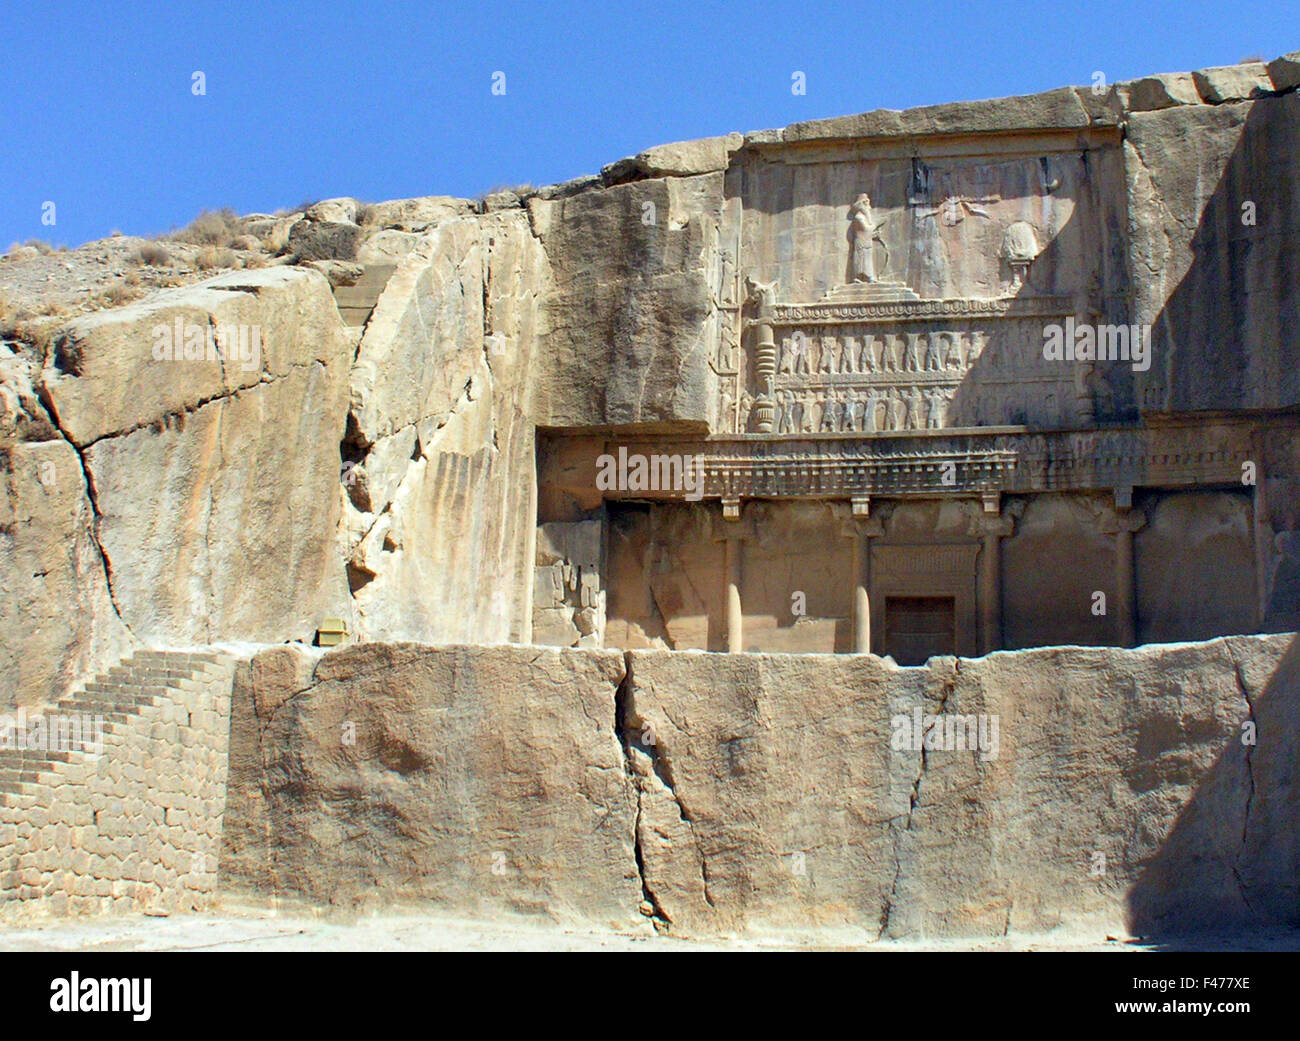 5824. Tombe de Xerxès III. À Persépolis. Xerxès (Artaxerxès ou Darius -naissance 425 - 338 avant J.-C.), roi de Perse et le onzième Empe Banque D'Images